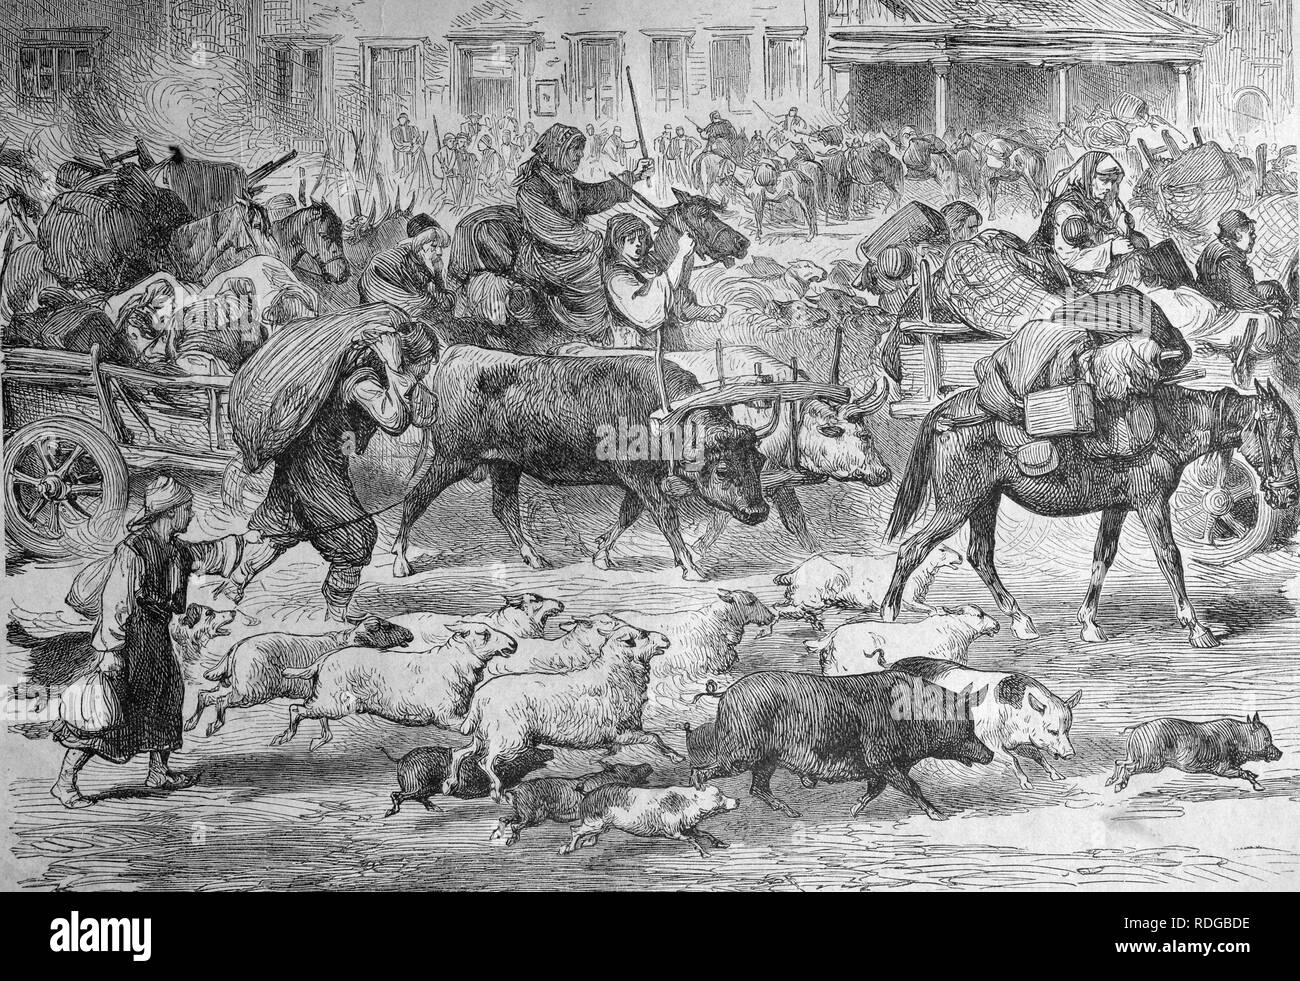 Les résidents de Serbie fuyant les Turcs, illustration historique, 1877 Banque D'Images